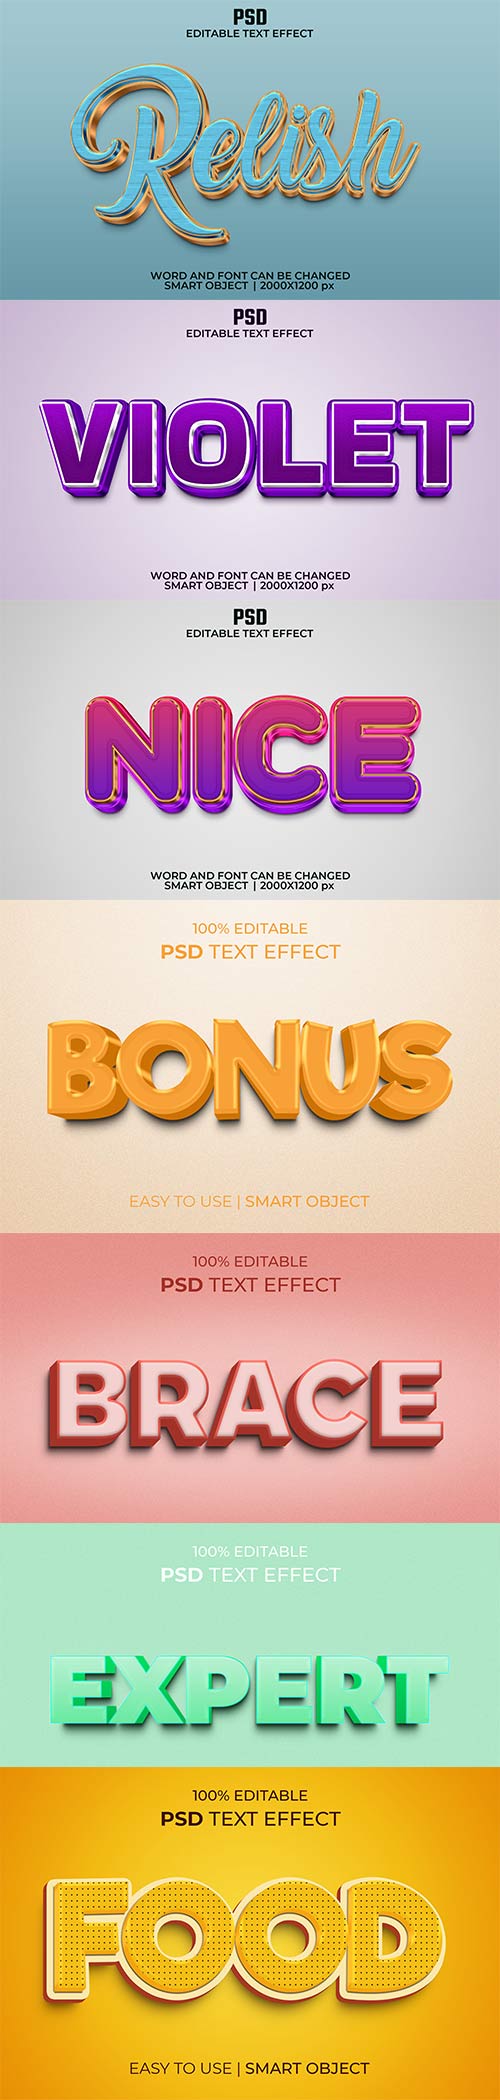 Psd text effect set vol 587